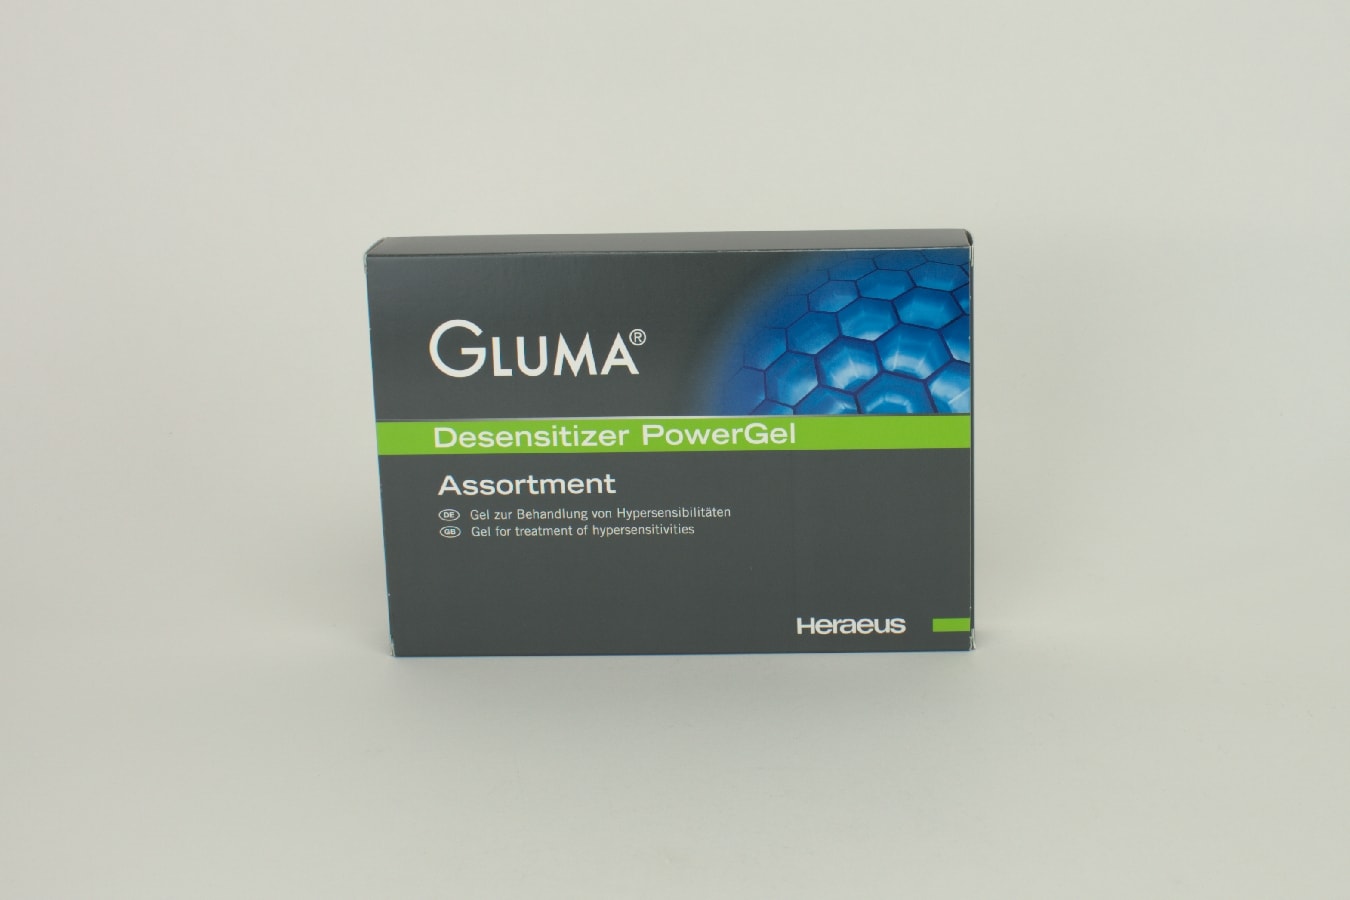 Gluma Desensitizer PowerGel 4x1ml +20 microbrush